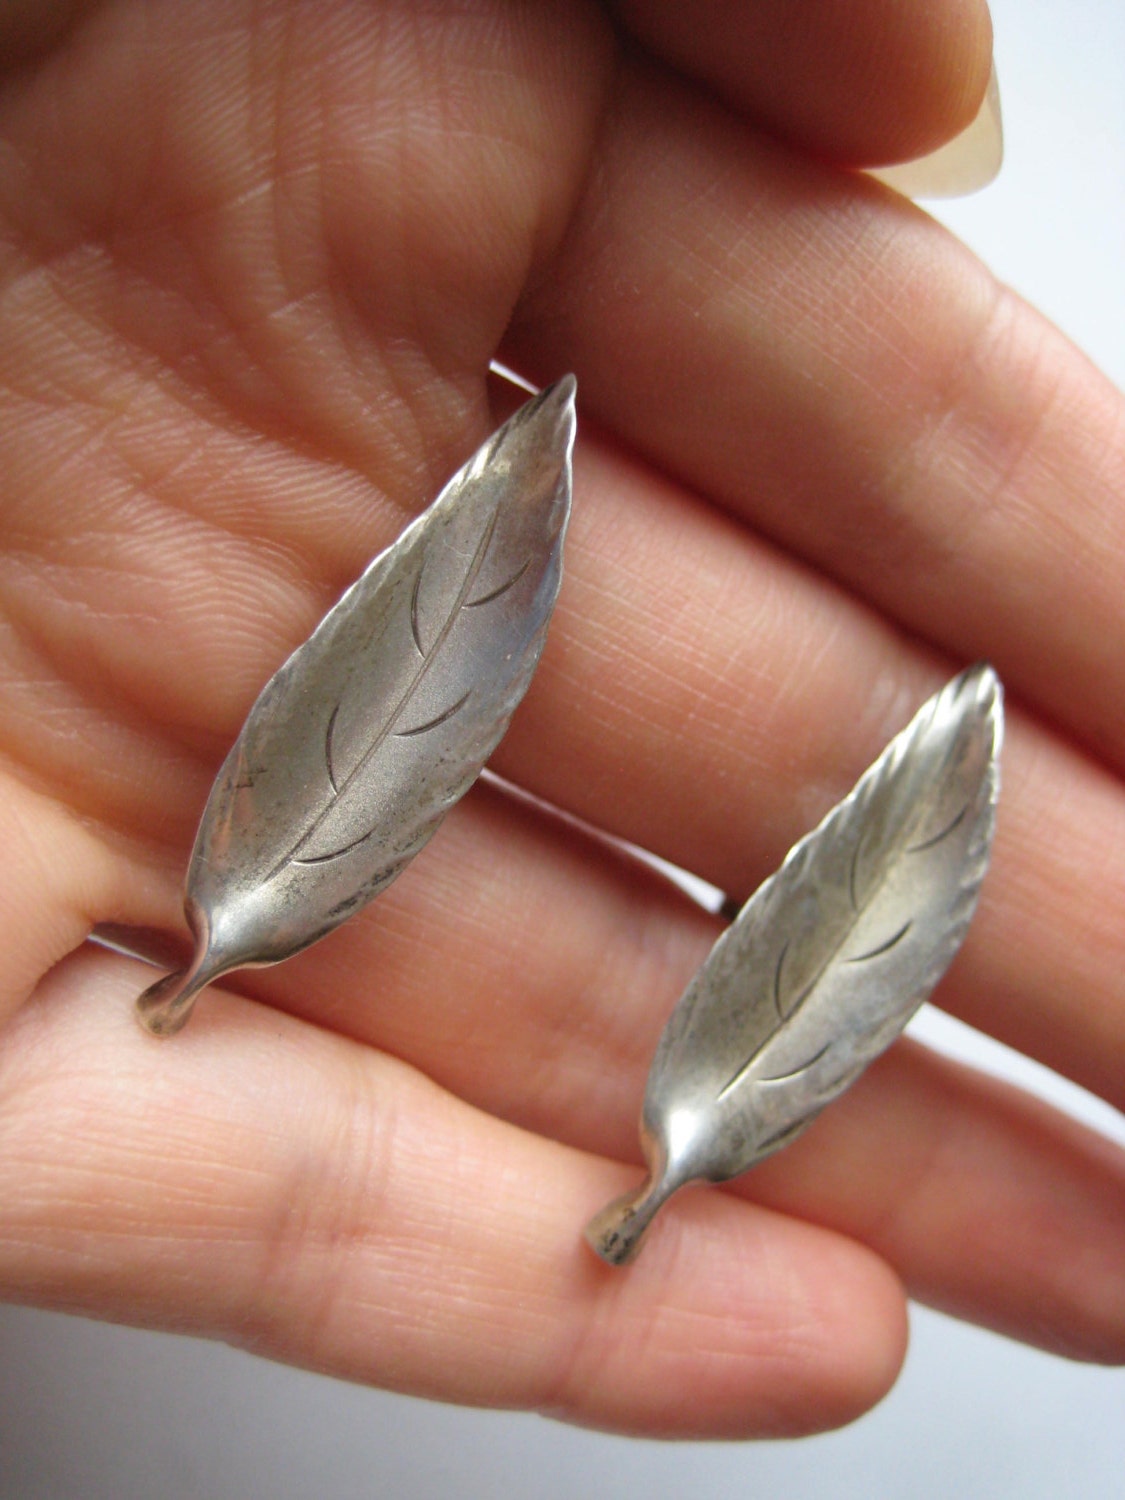 925 Sterling Silver Vintage Leaf Screw Back Earrings 